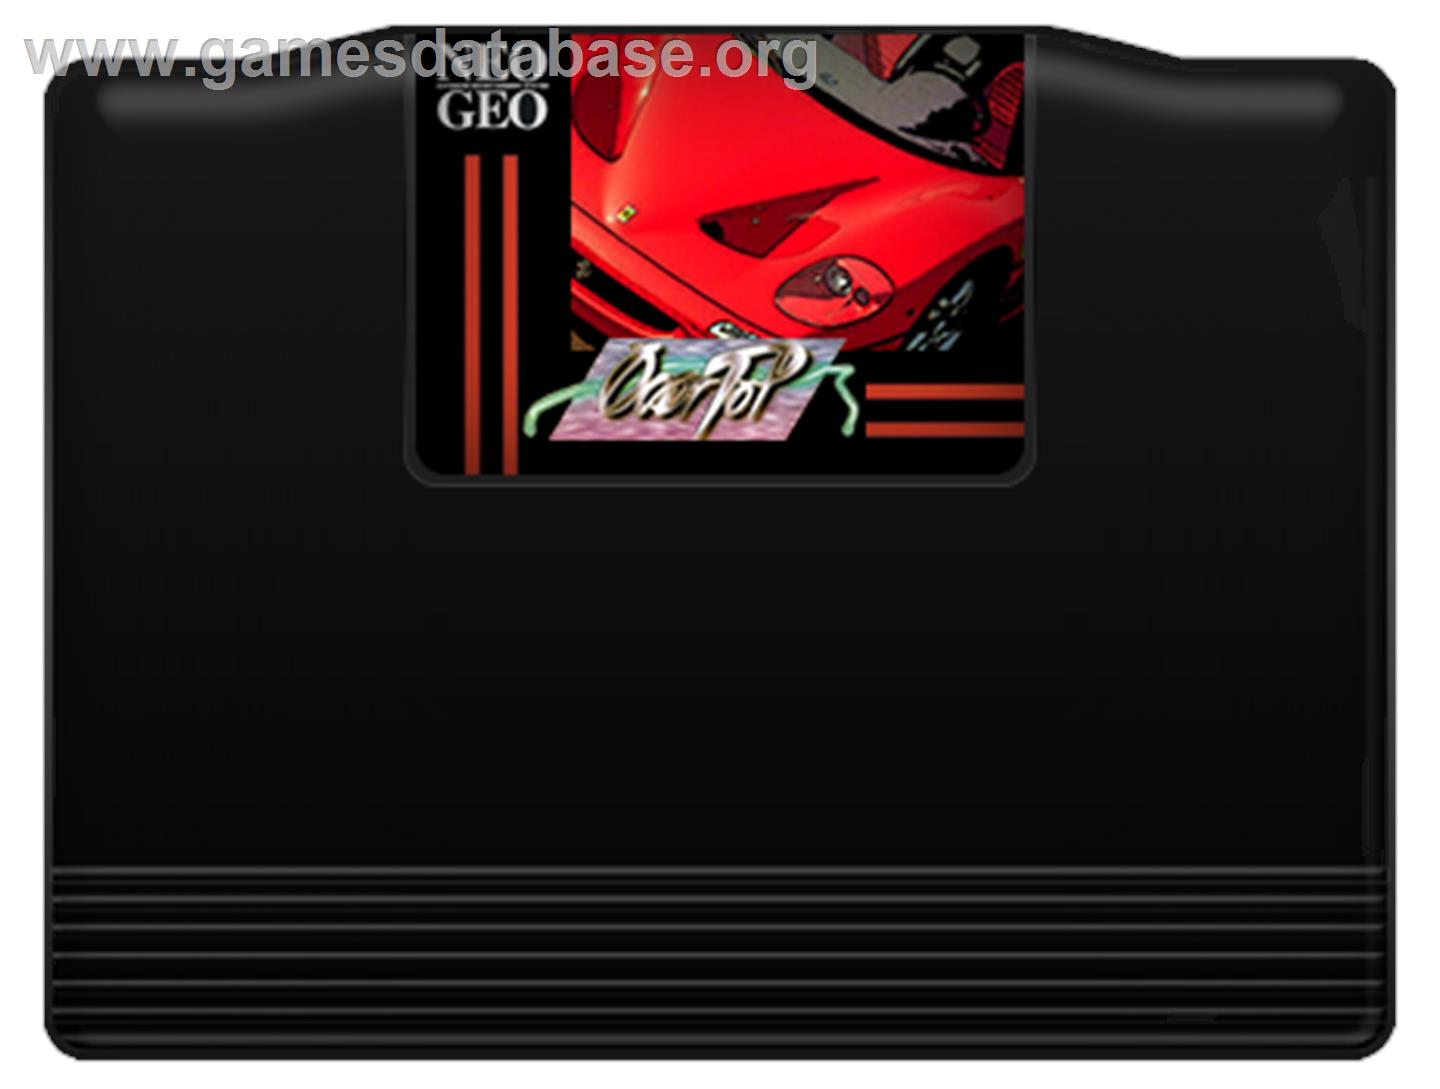 Over Top - SNK Neo-Geo AES - Artwork - Cartridge